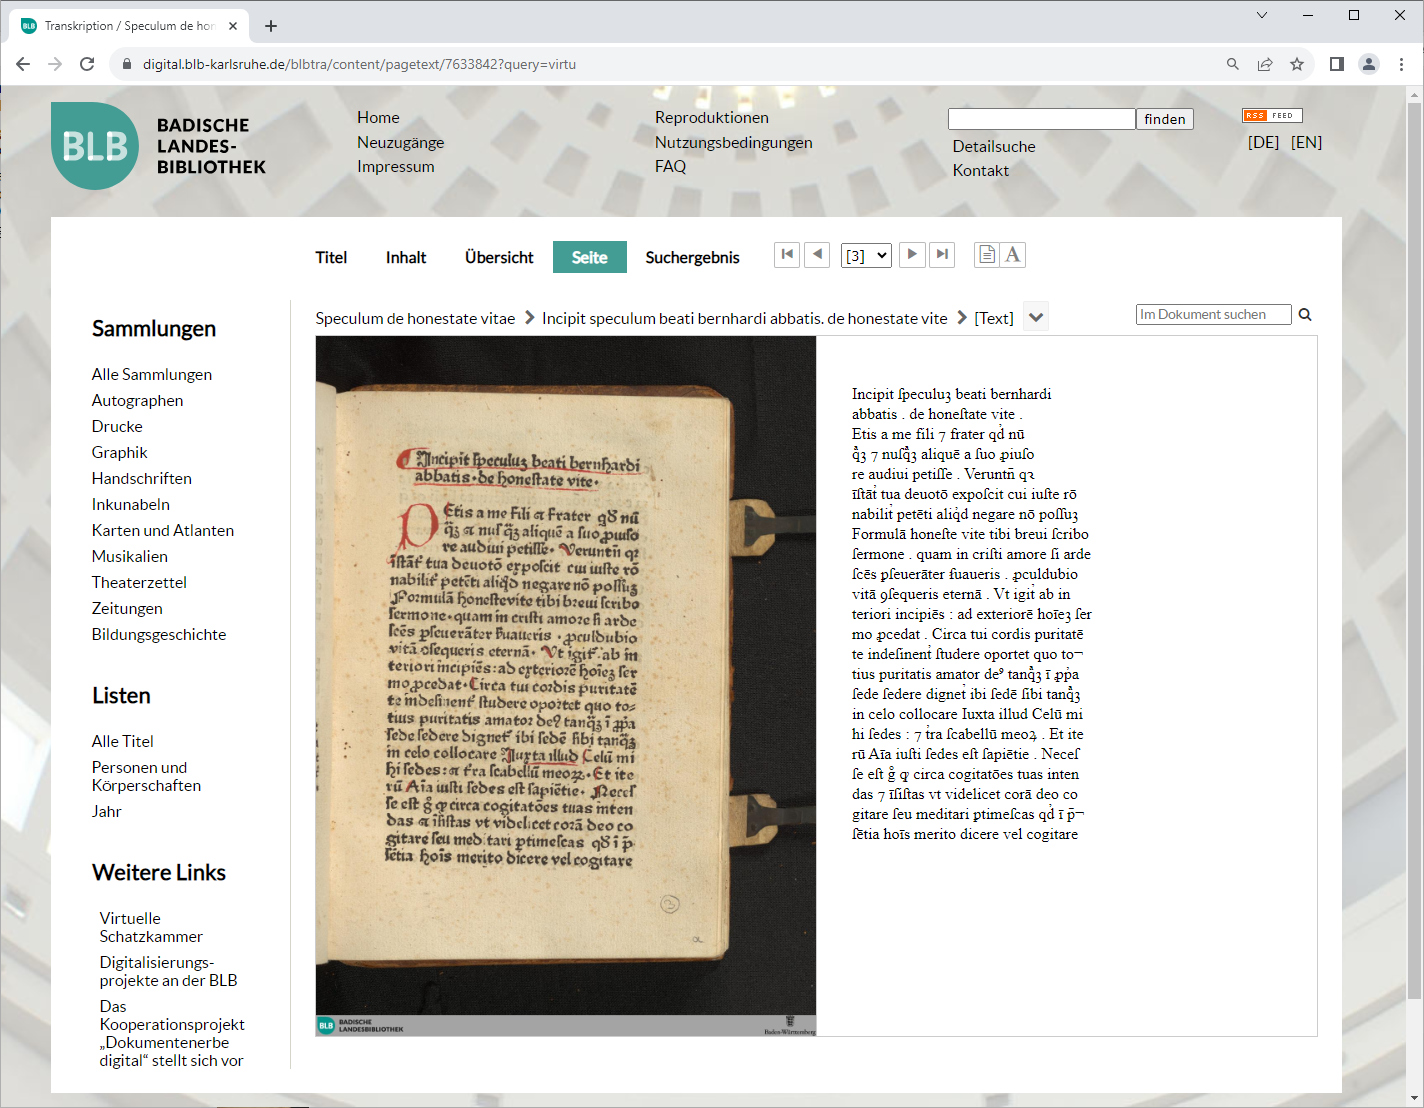 Der Screenshot zeigt das Digitalisat und den Volltext eines lateinischen Drucks von um 1472 bis 1474 nebeneinander.